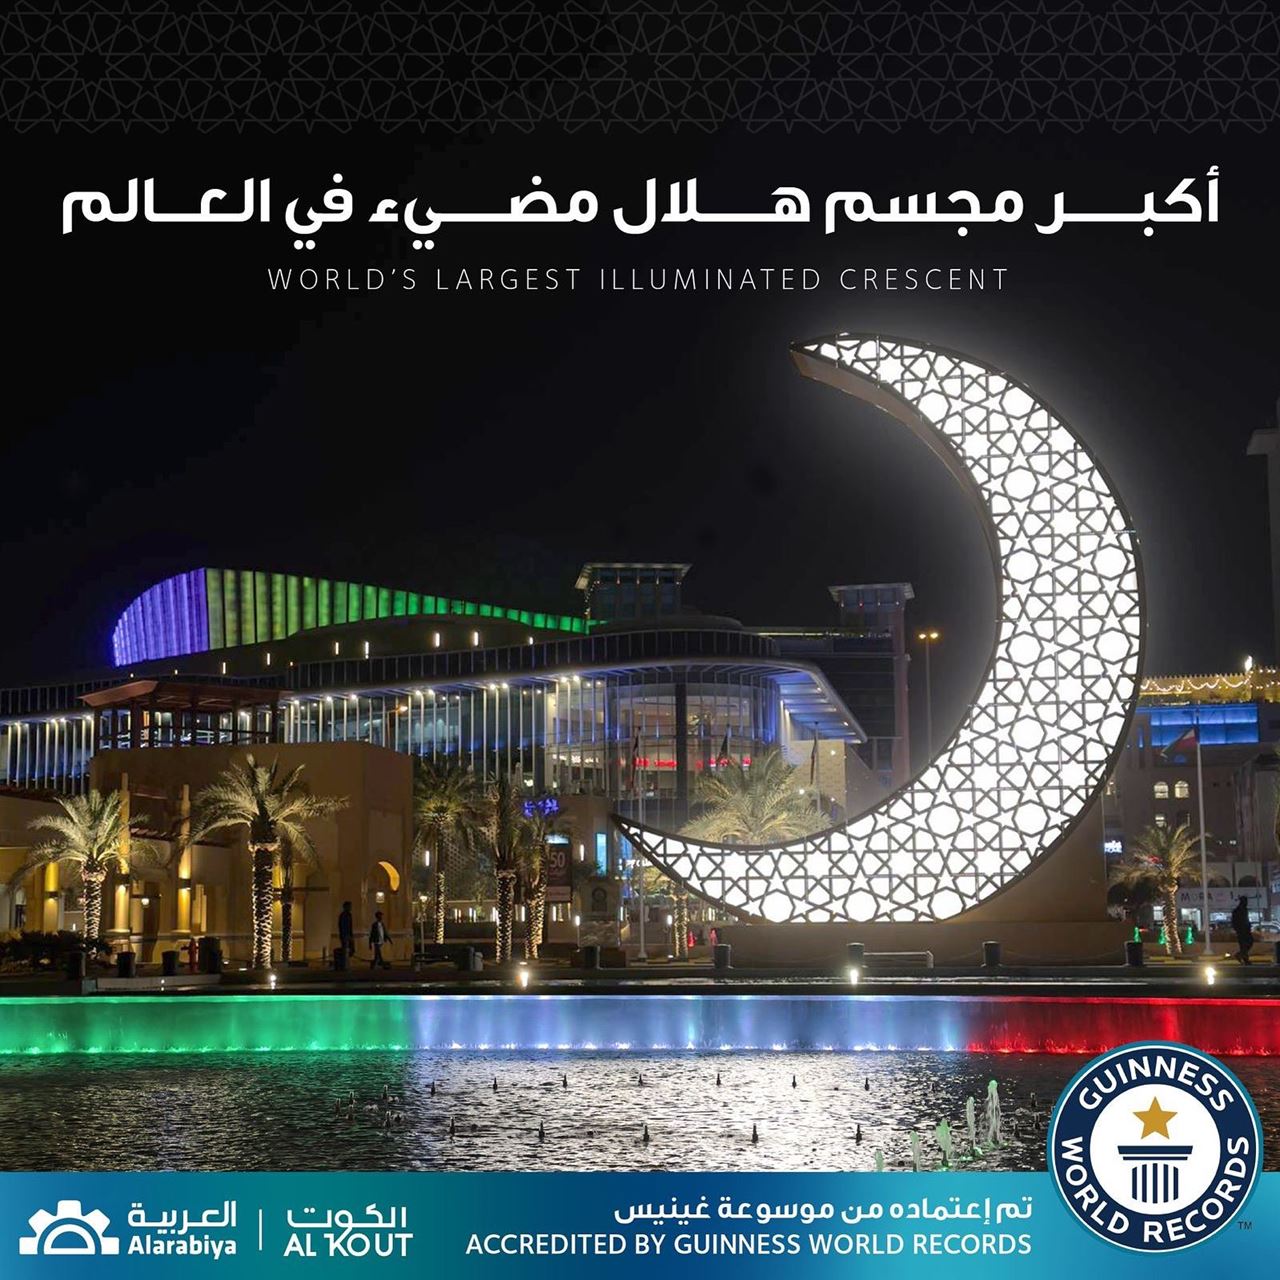 الكويت تدخل موسوعة غينيس بأكبر هلال رمضان مضيء في العالم